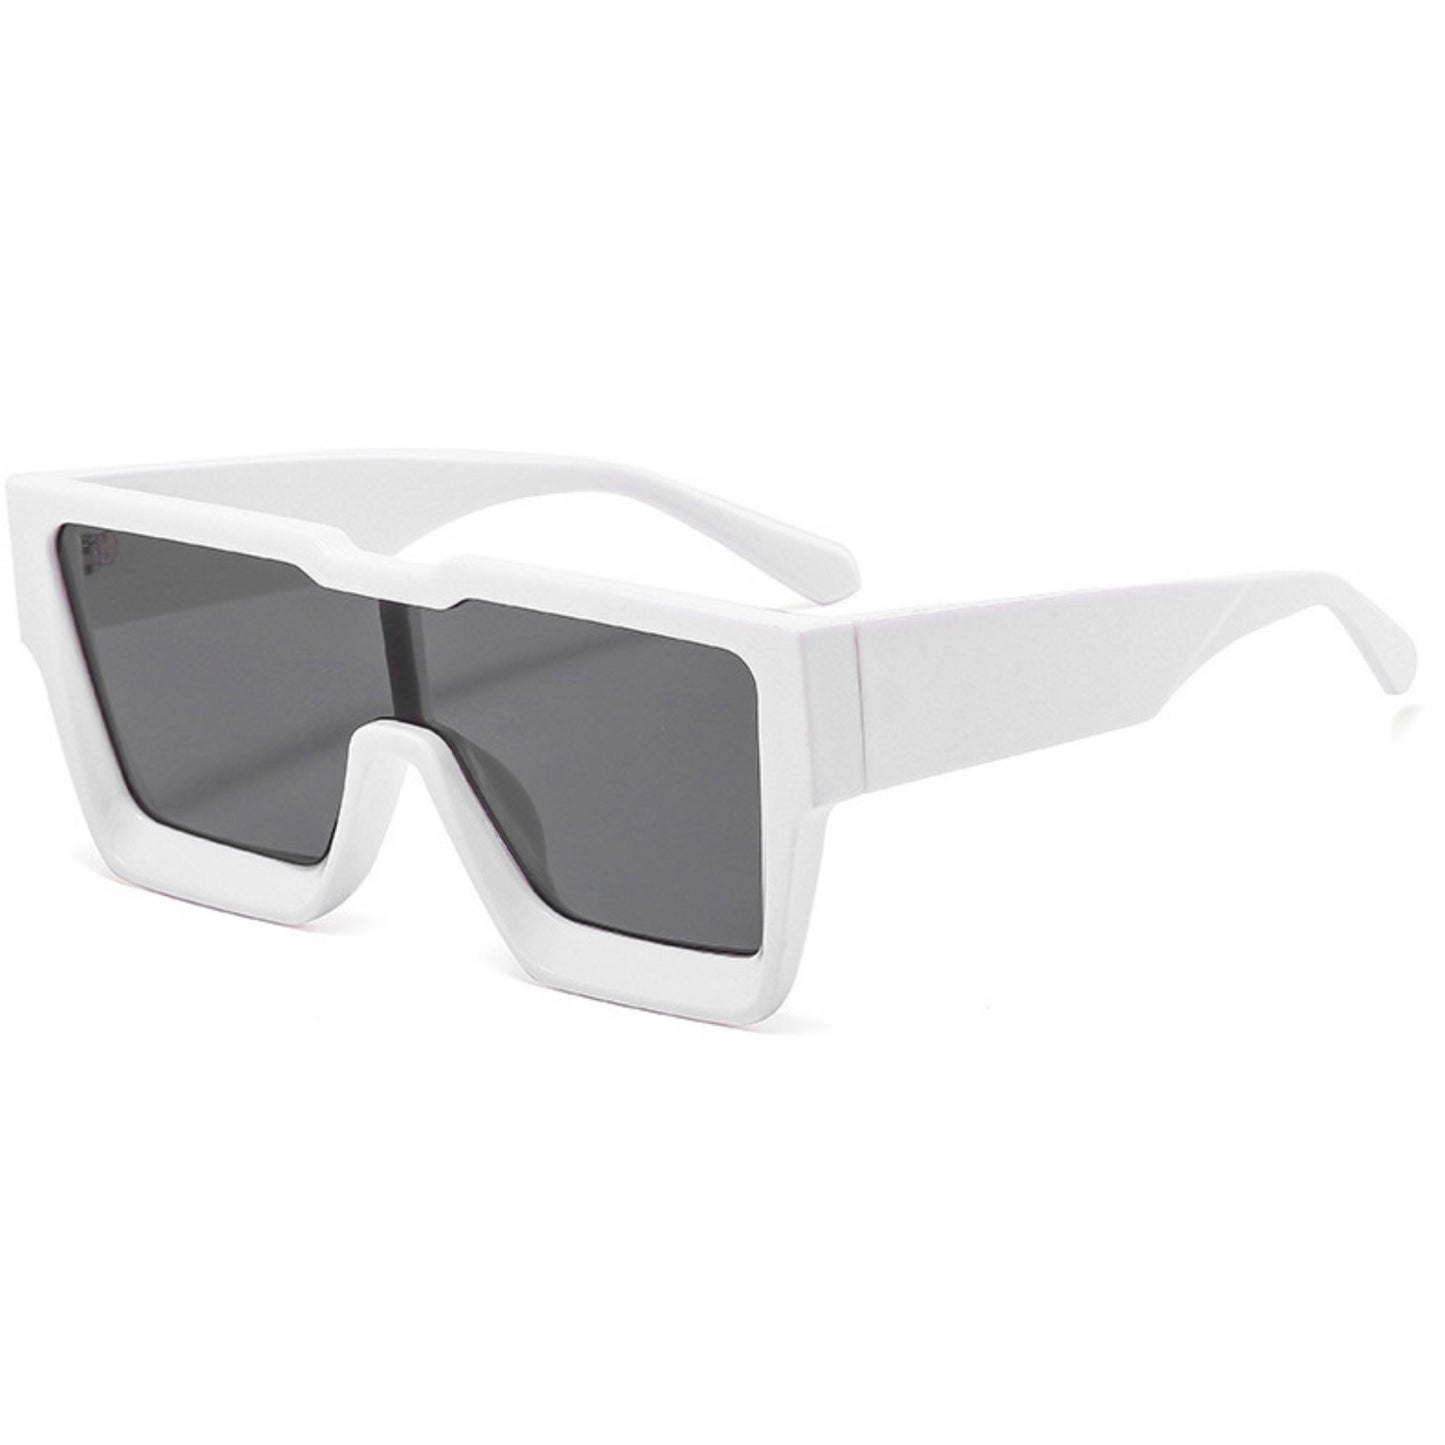 Γυαλιά ηλίου Toronto (Μάσκα) από την Exposure Sunglasses με προστασία UV400 με άσπρο σκελετό και μαύρο φακό.Πλαινή όψη.